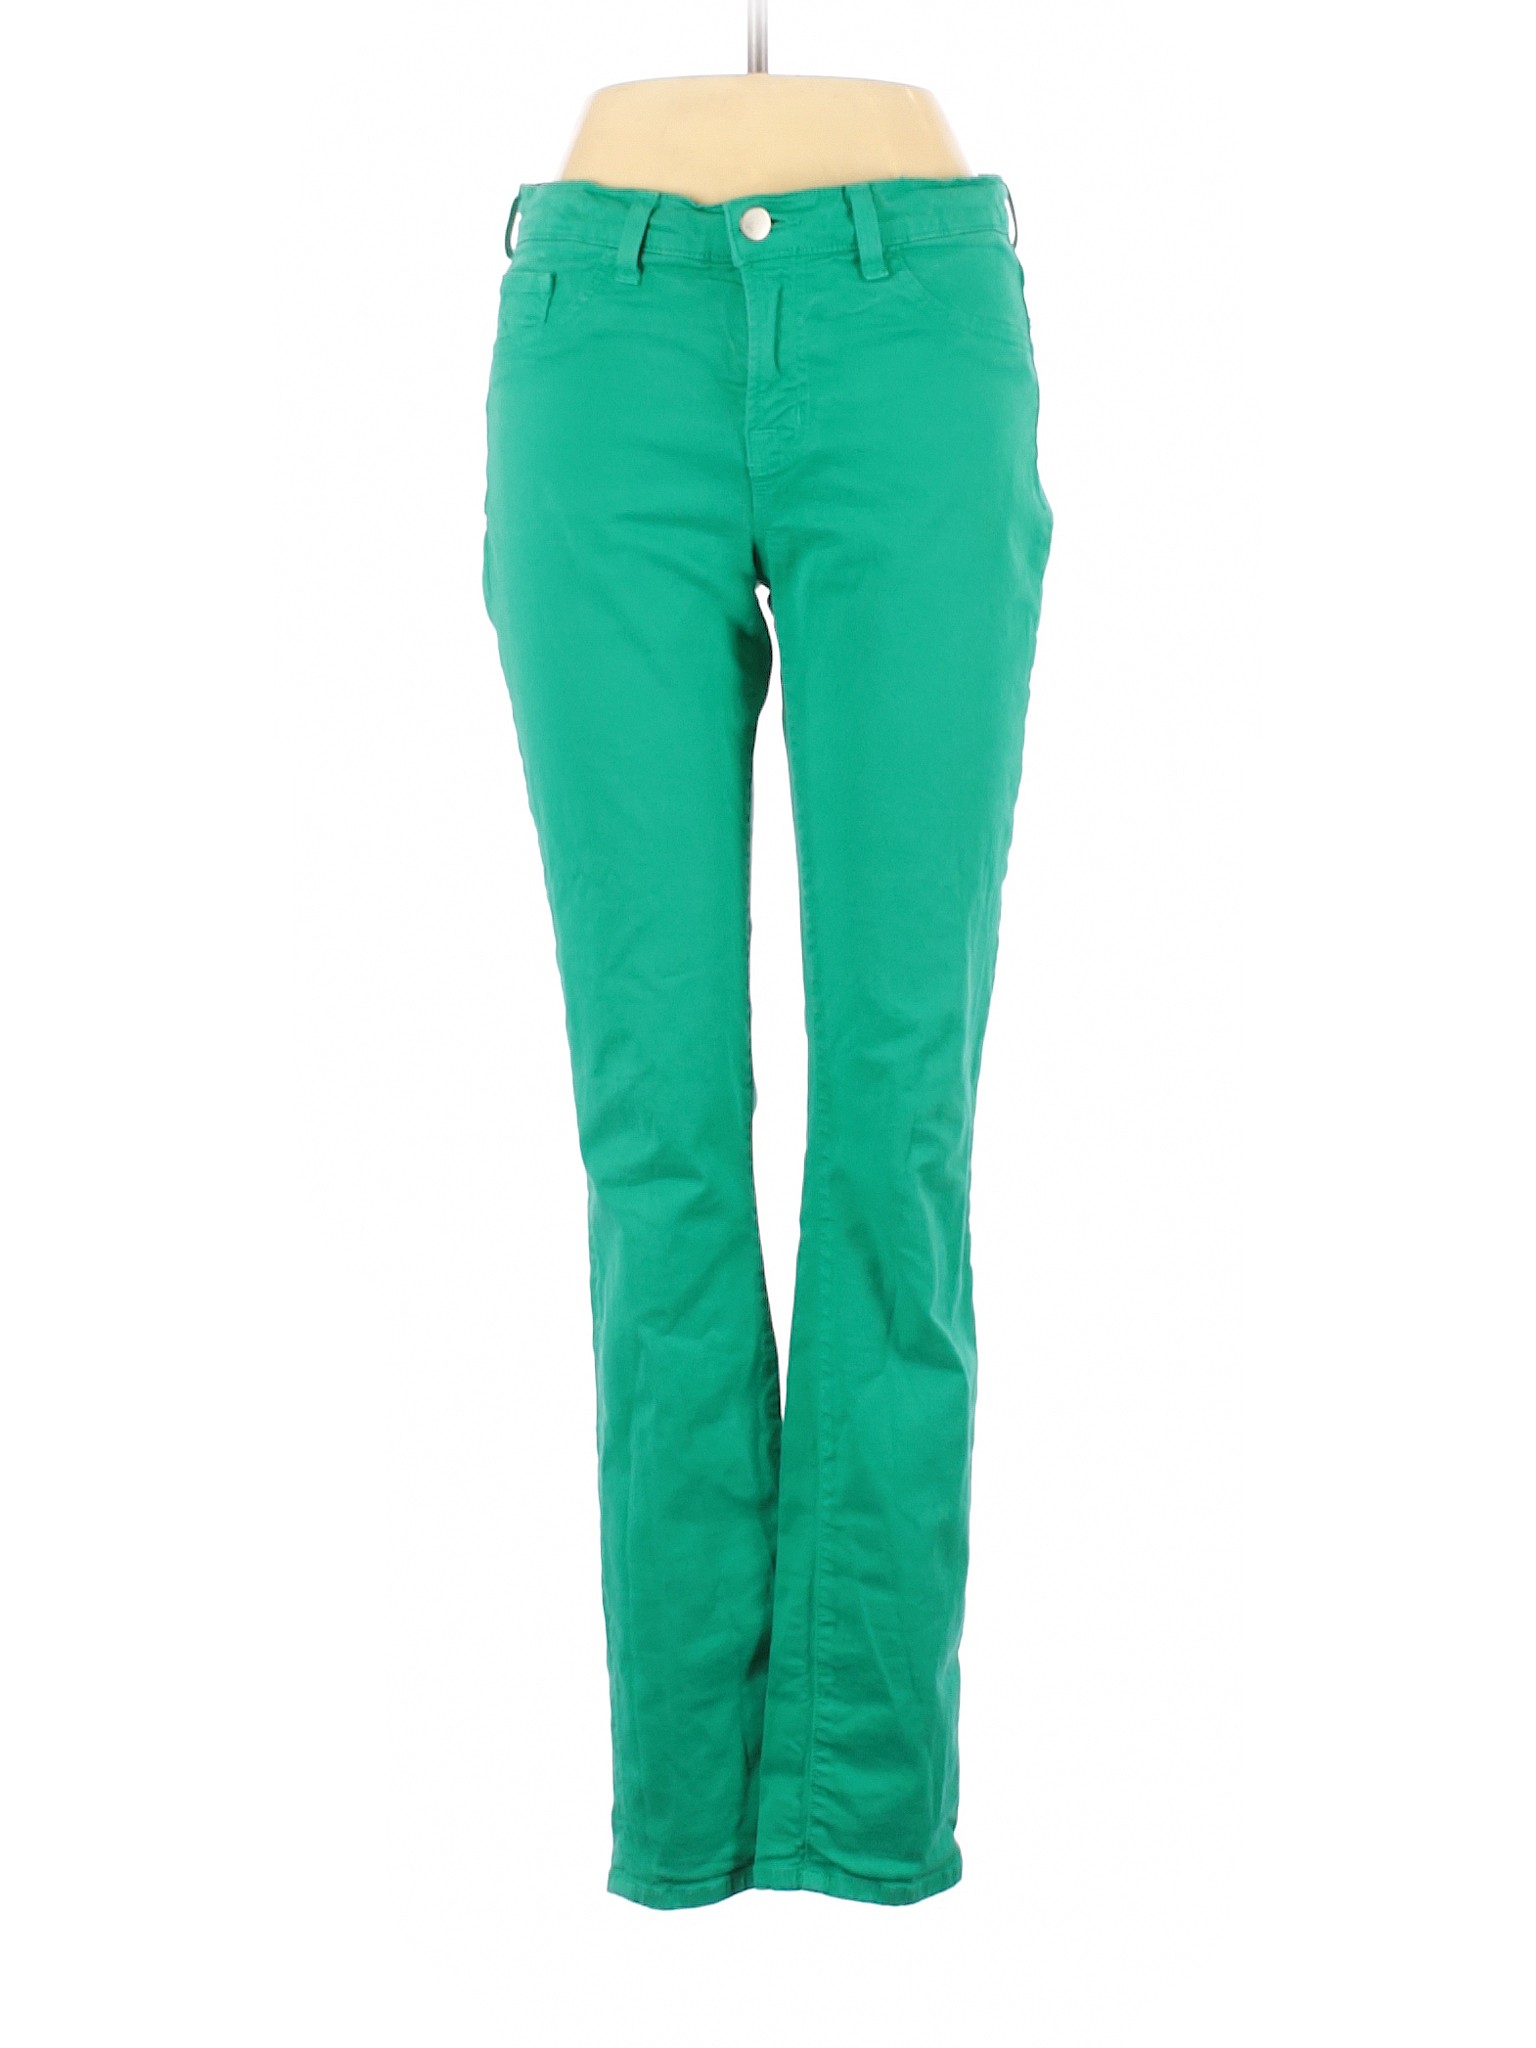 J Brand Women Green Jeans 28W | eBay